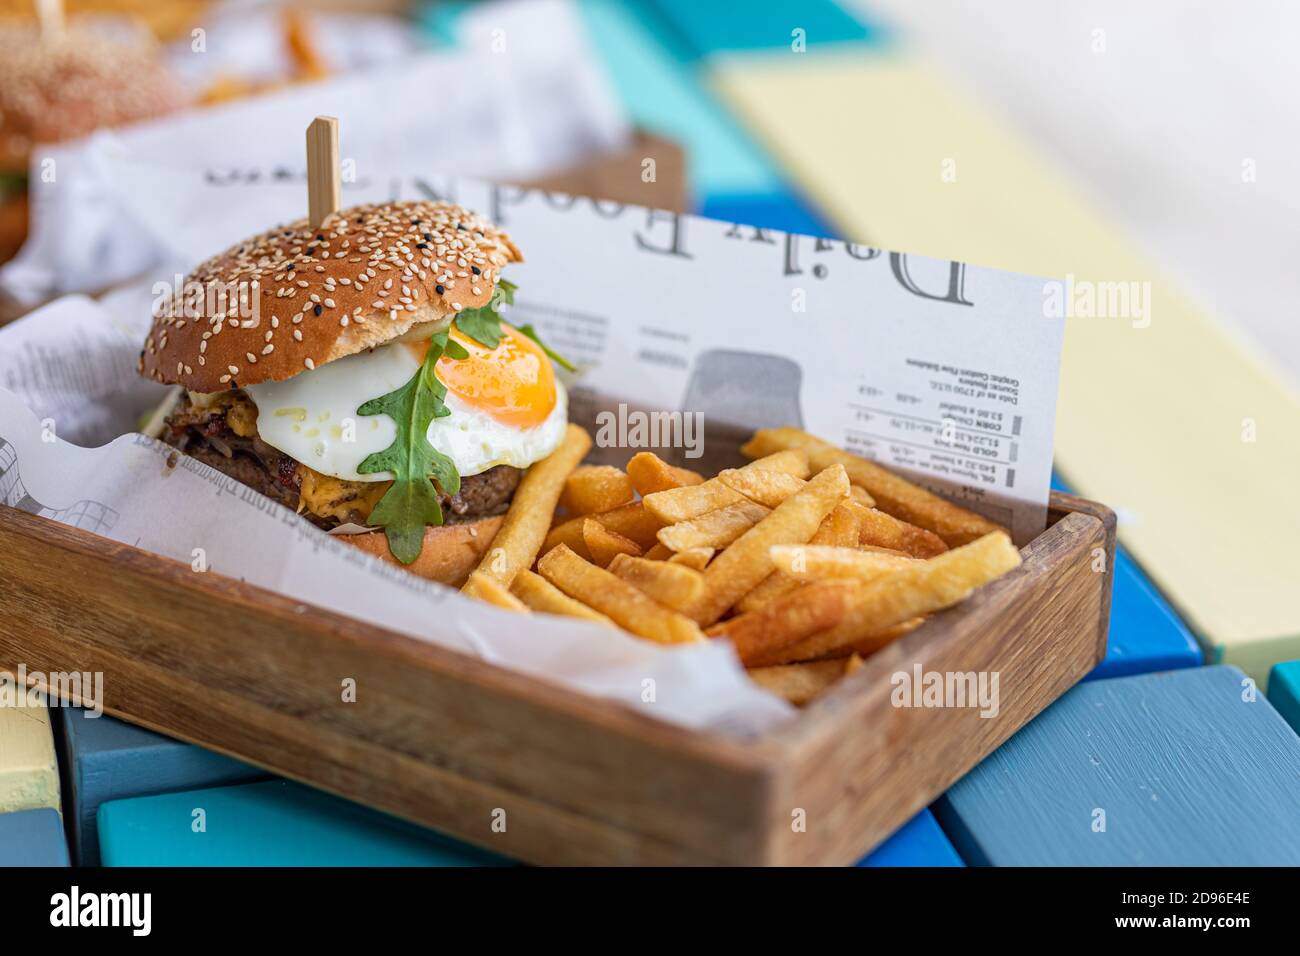 Nahaufnahme von Rindfleisch Burger auf Holztisch Hintergrund. Hamburger gegrillter Fleischburger, Salat, Tomaten und Spiegelei. Handgemachter Gourmet-Burger Stockfoto